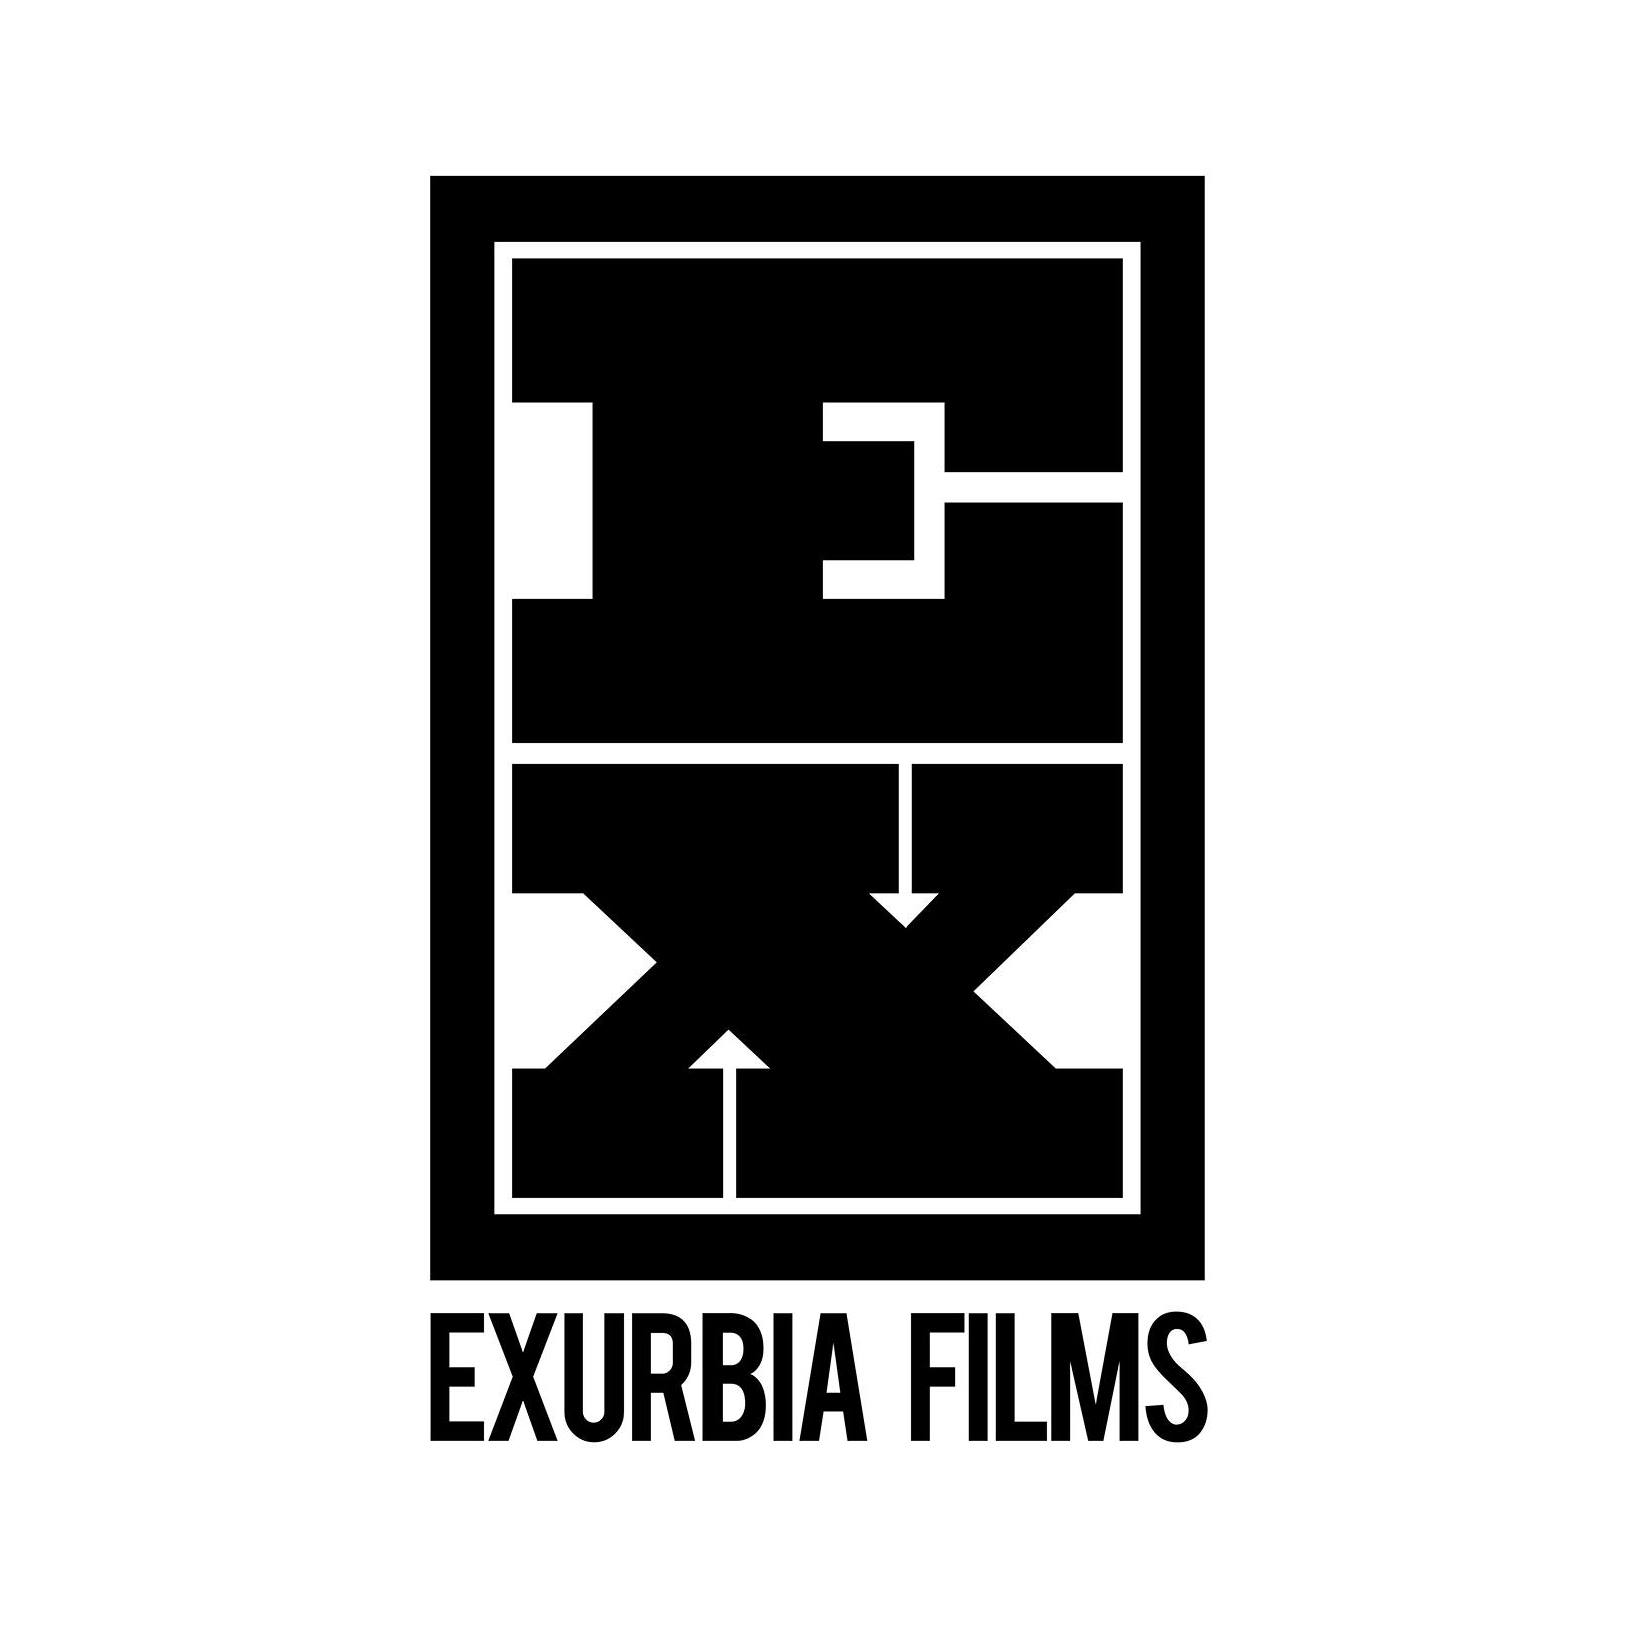 Exurbia Films